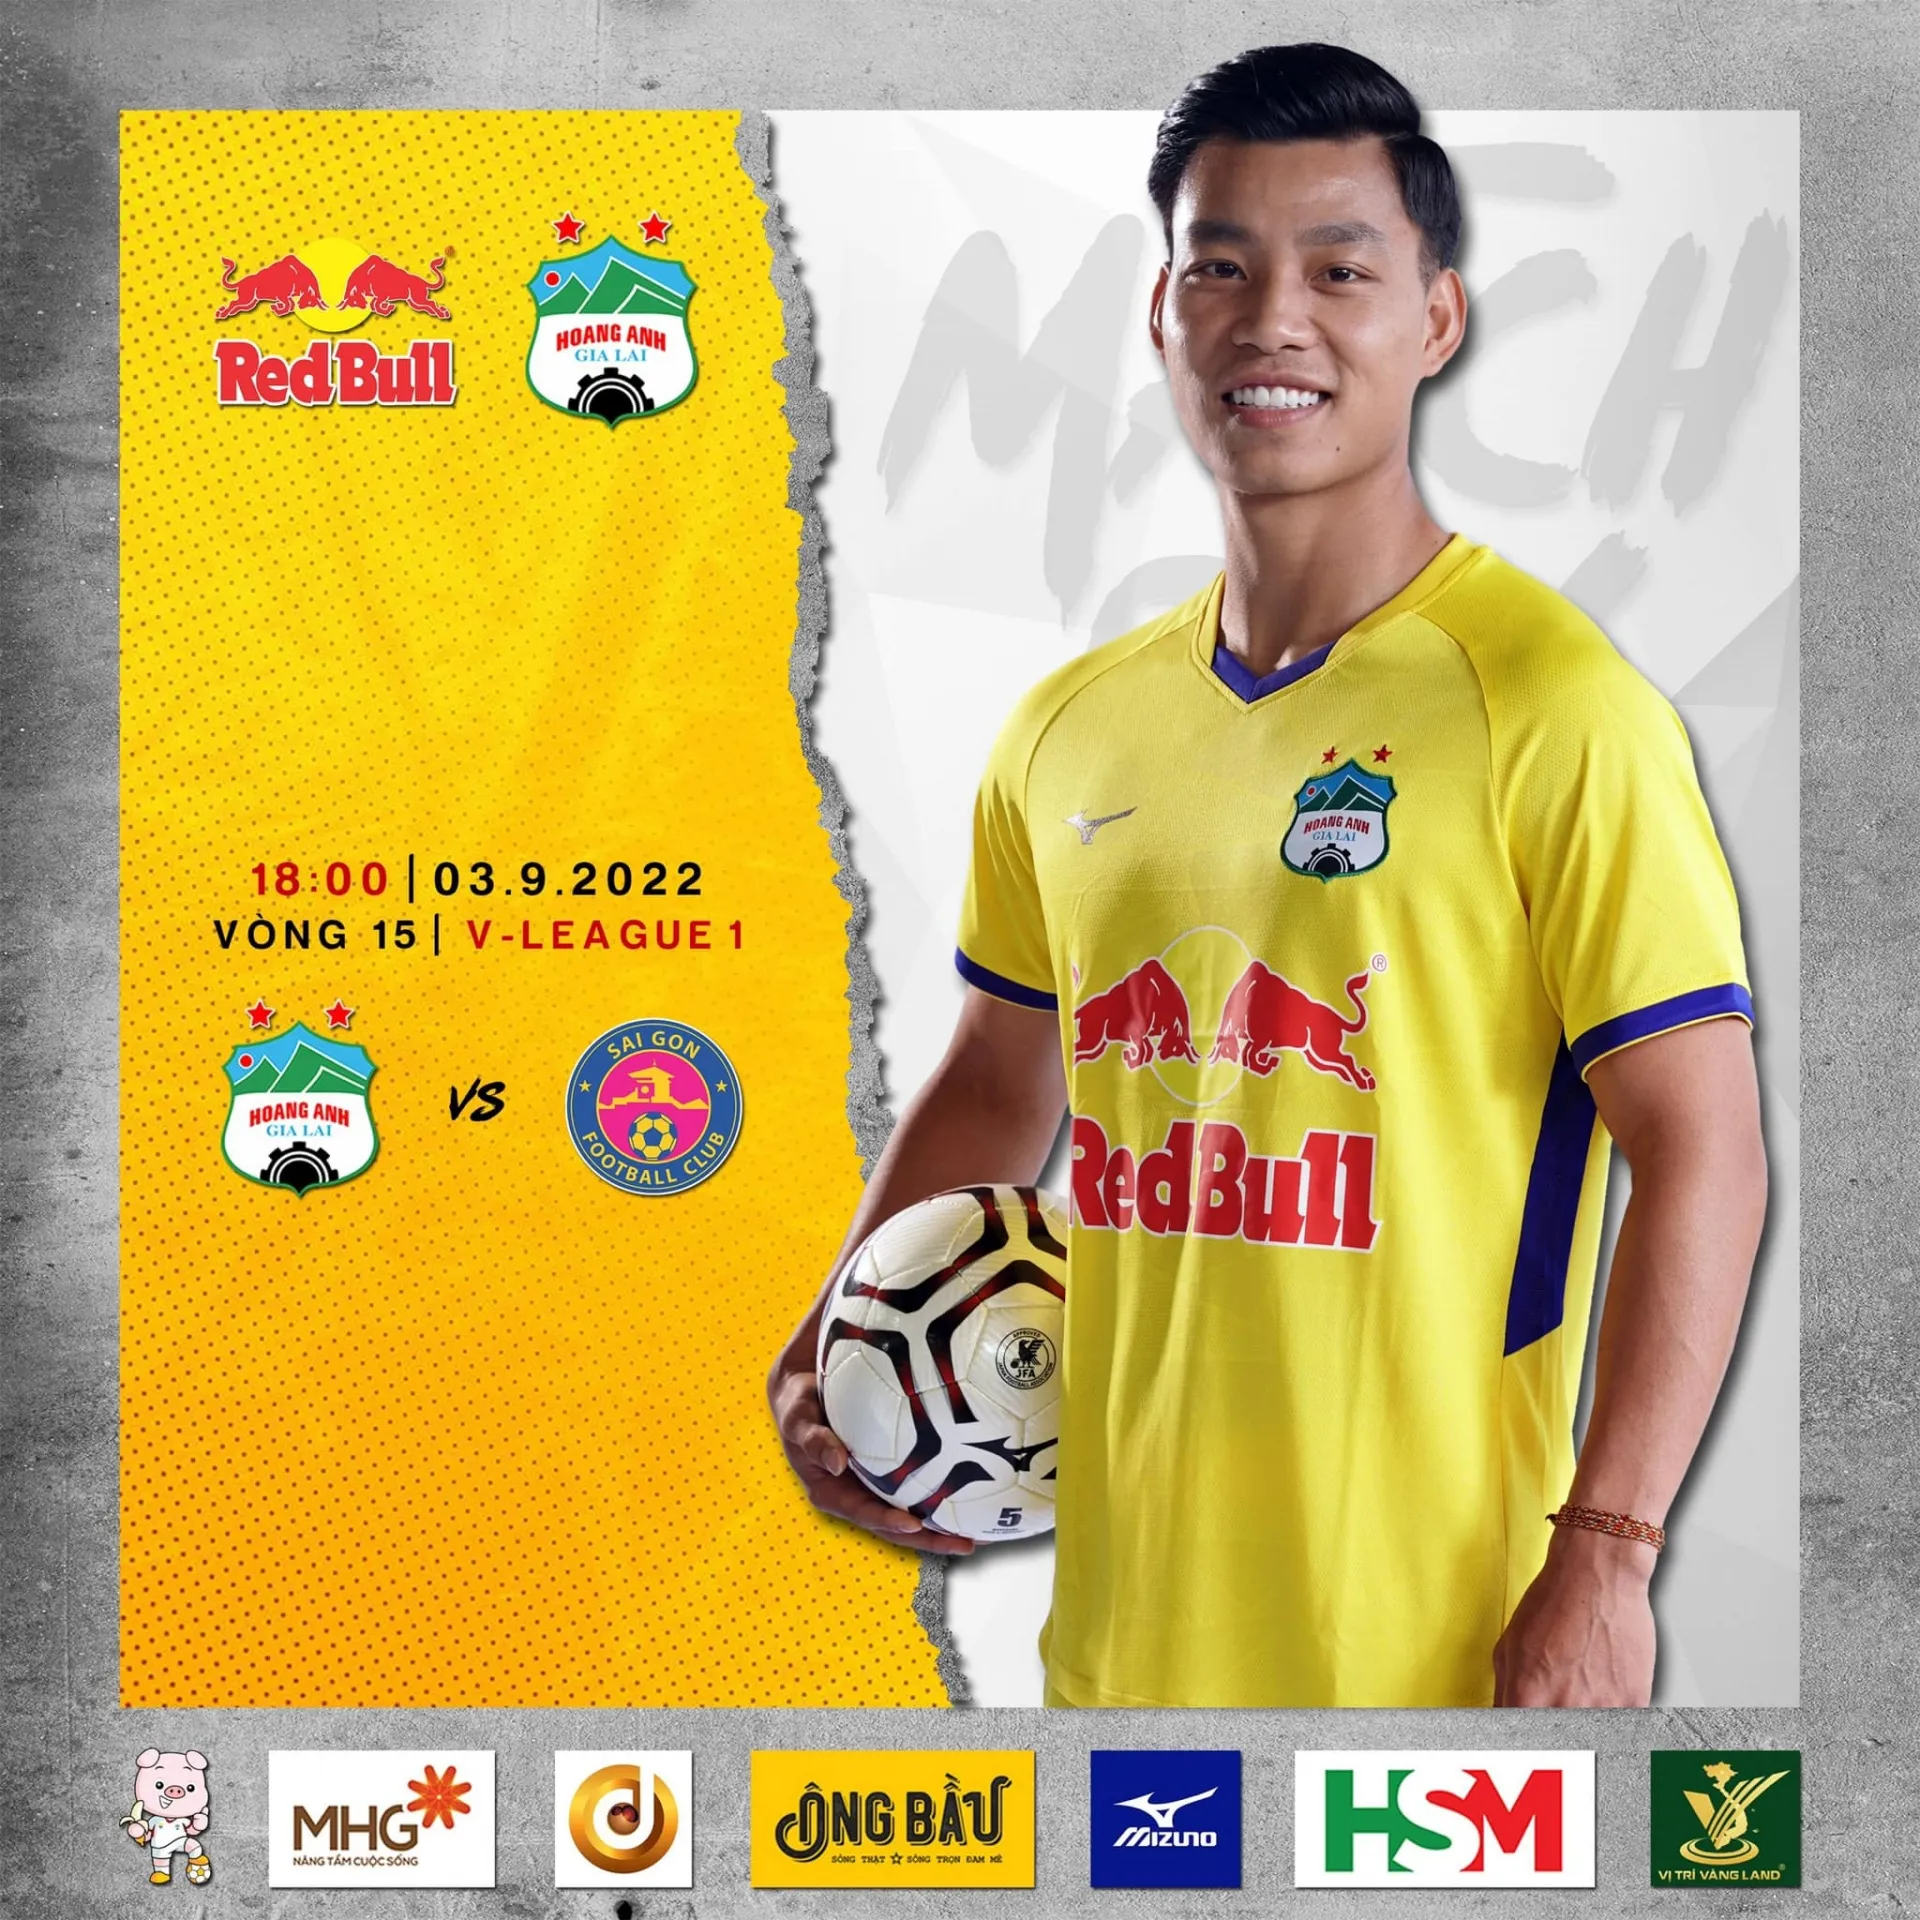 Nhận định HAGL vs Sài Gòn FC (18h00 03/09/2022) vòng 15 V-League: Tìm lại mạch thắng